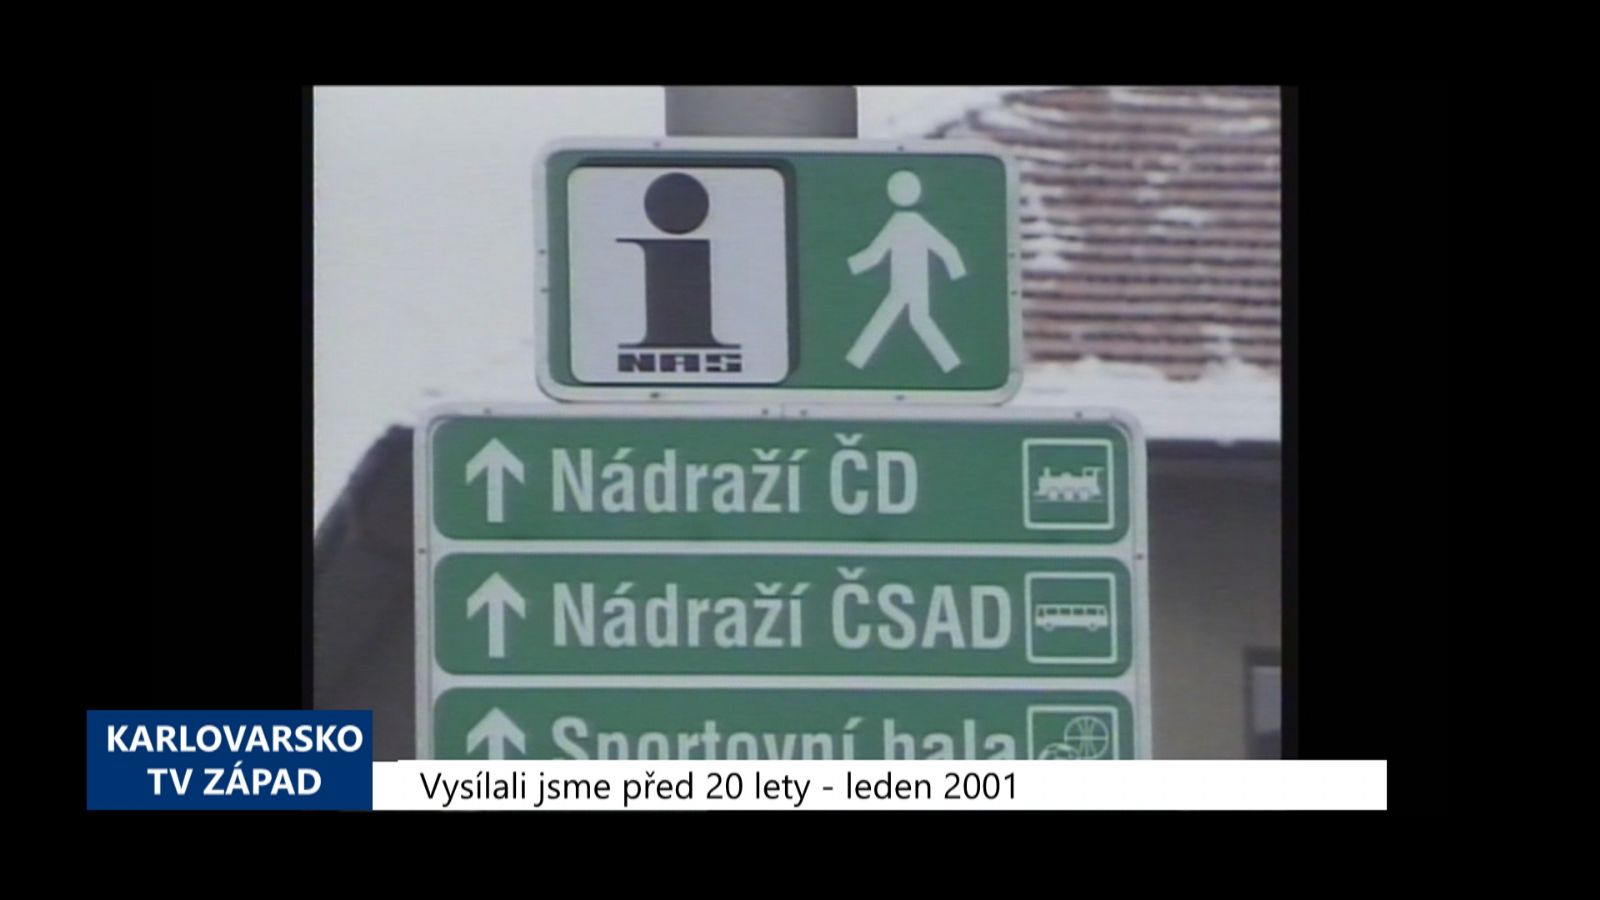 2001 – Sokolov: Orientační systém města byl dokončen (TV Západ)